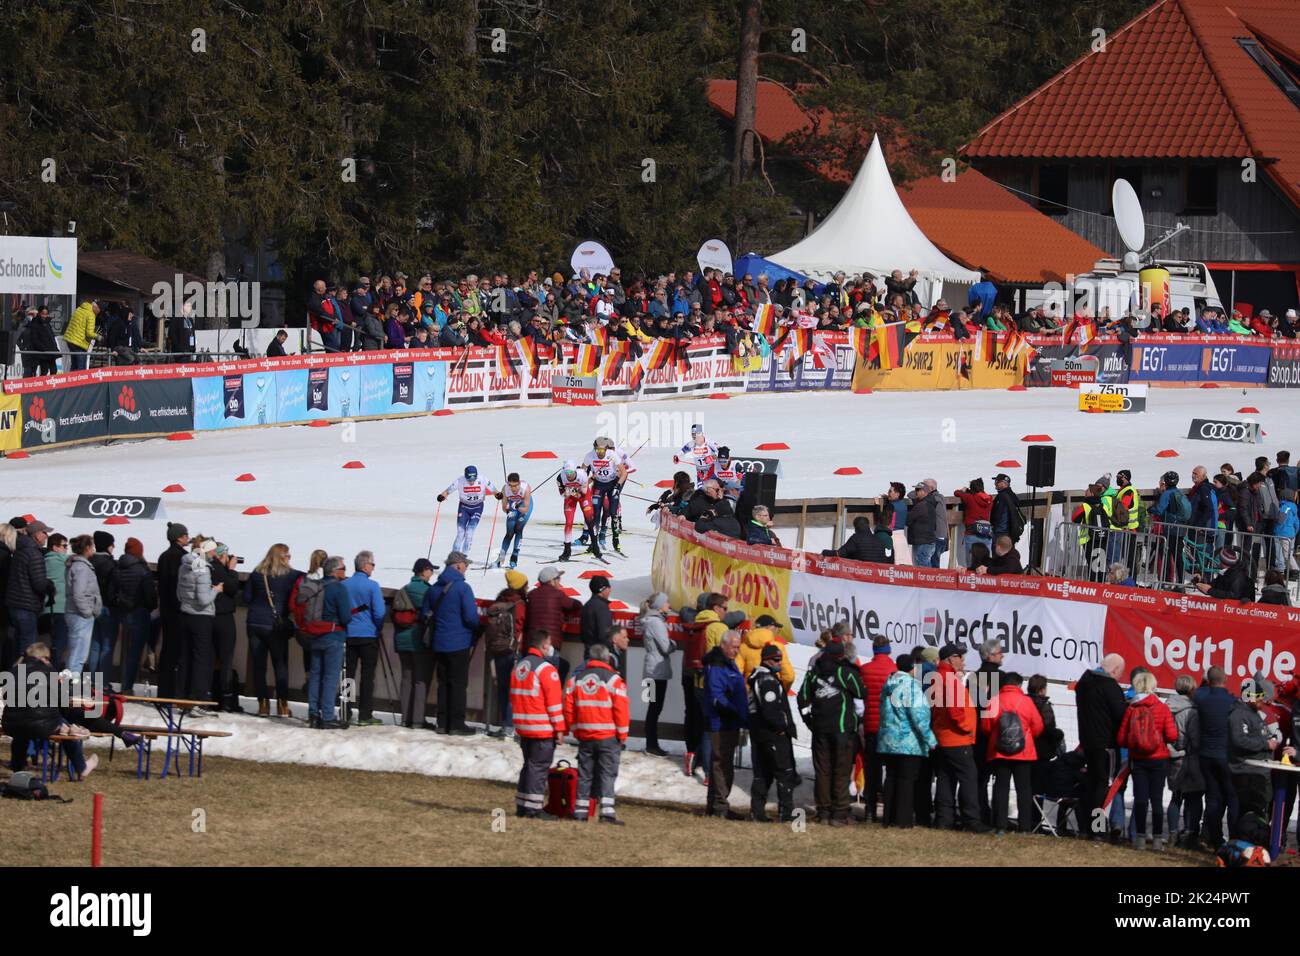 Zuschauerkulisse mit Athleten beim Weltcup im Skistadion Wittenbach von Schonach Nordische Kombination Weltcupfinale 2022 Stock Photo